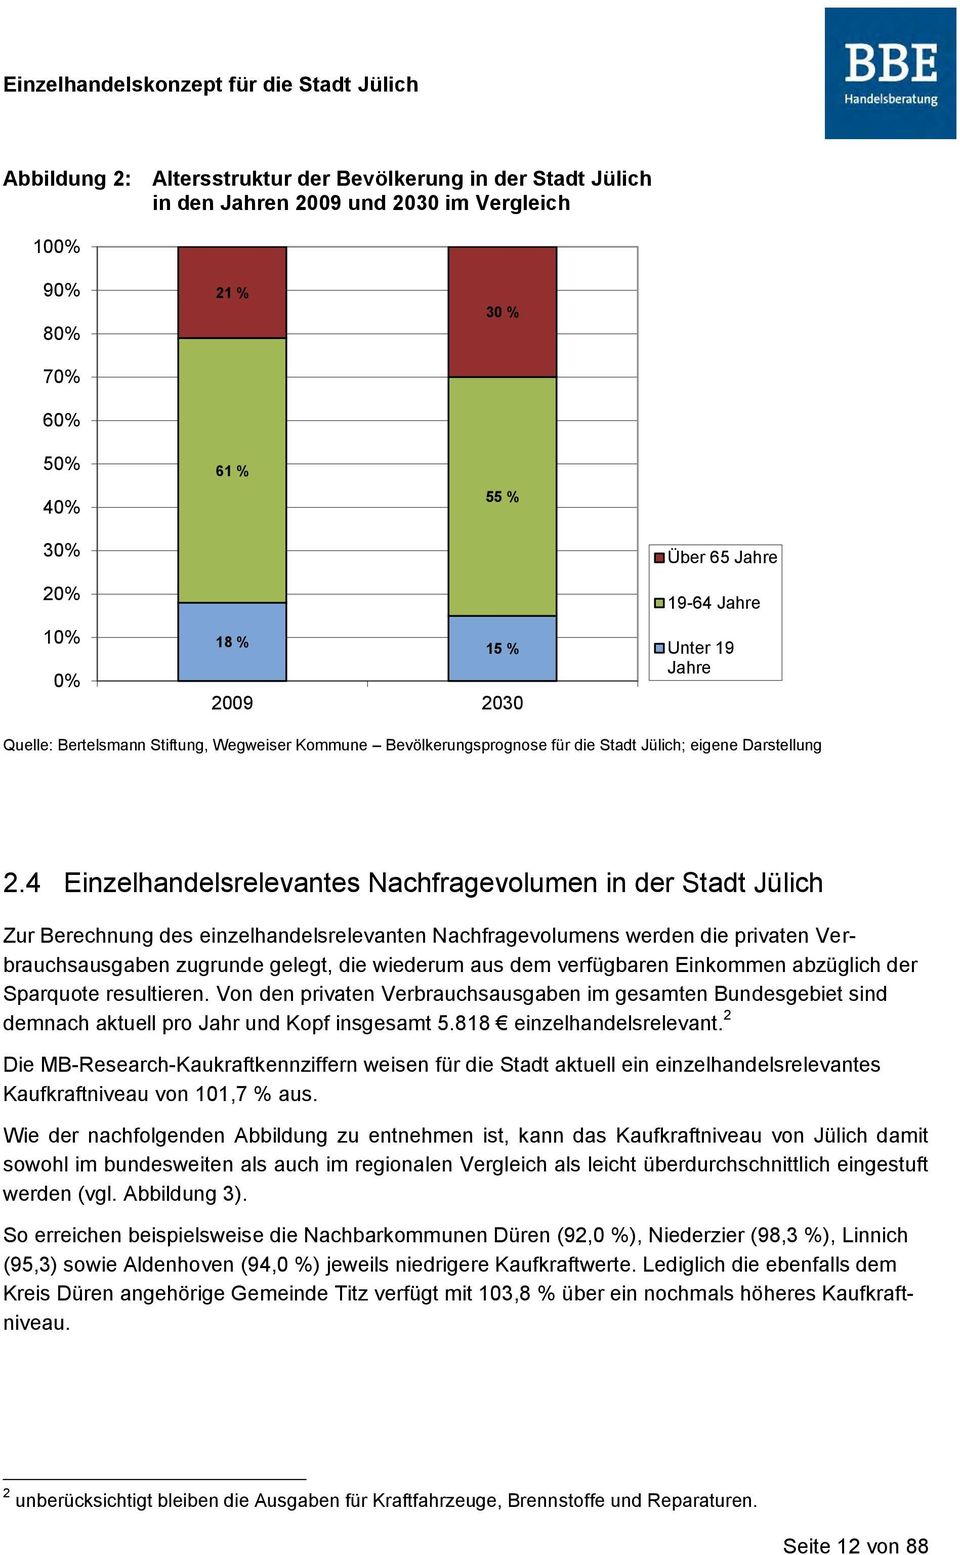 4 Einzelhandelsrelevantes Nachfragevolumen in der Stadt Jülich Zur Berechnung des einzelhandelsrelevanten Nachfragevolumens werden die privaten Verbrauchsausgaben zugrunde gelegt, die wiederum aus